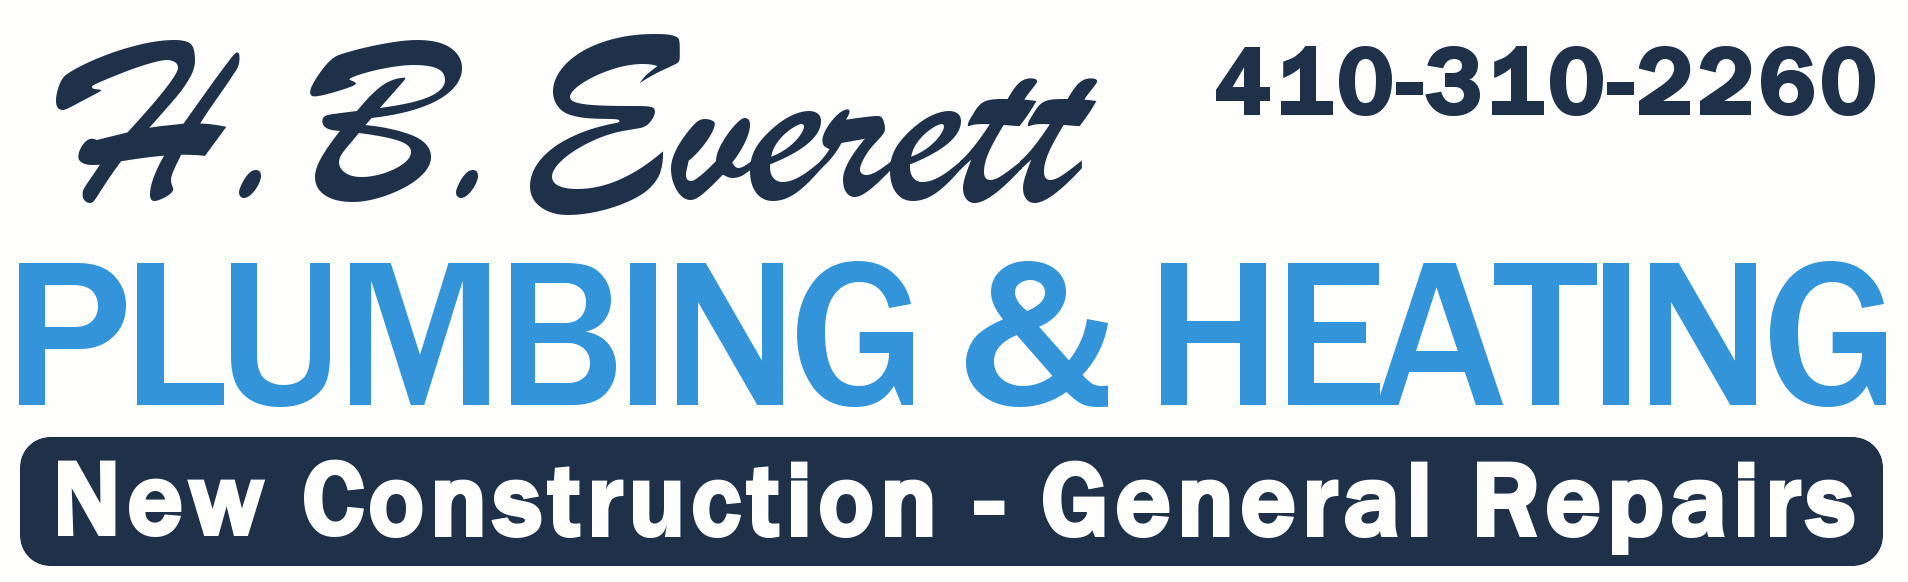 H.B.Everett Plumbing & Heating